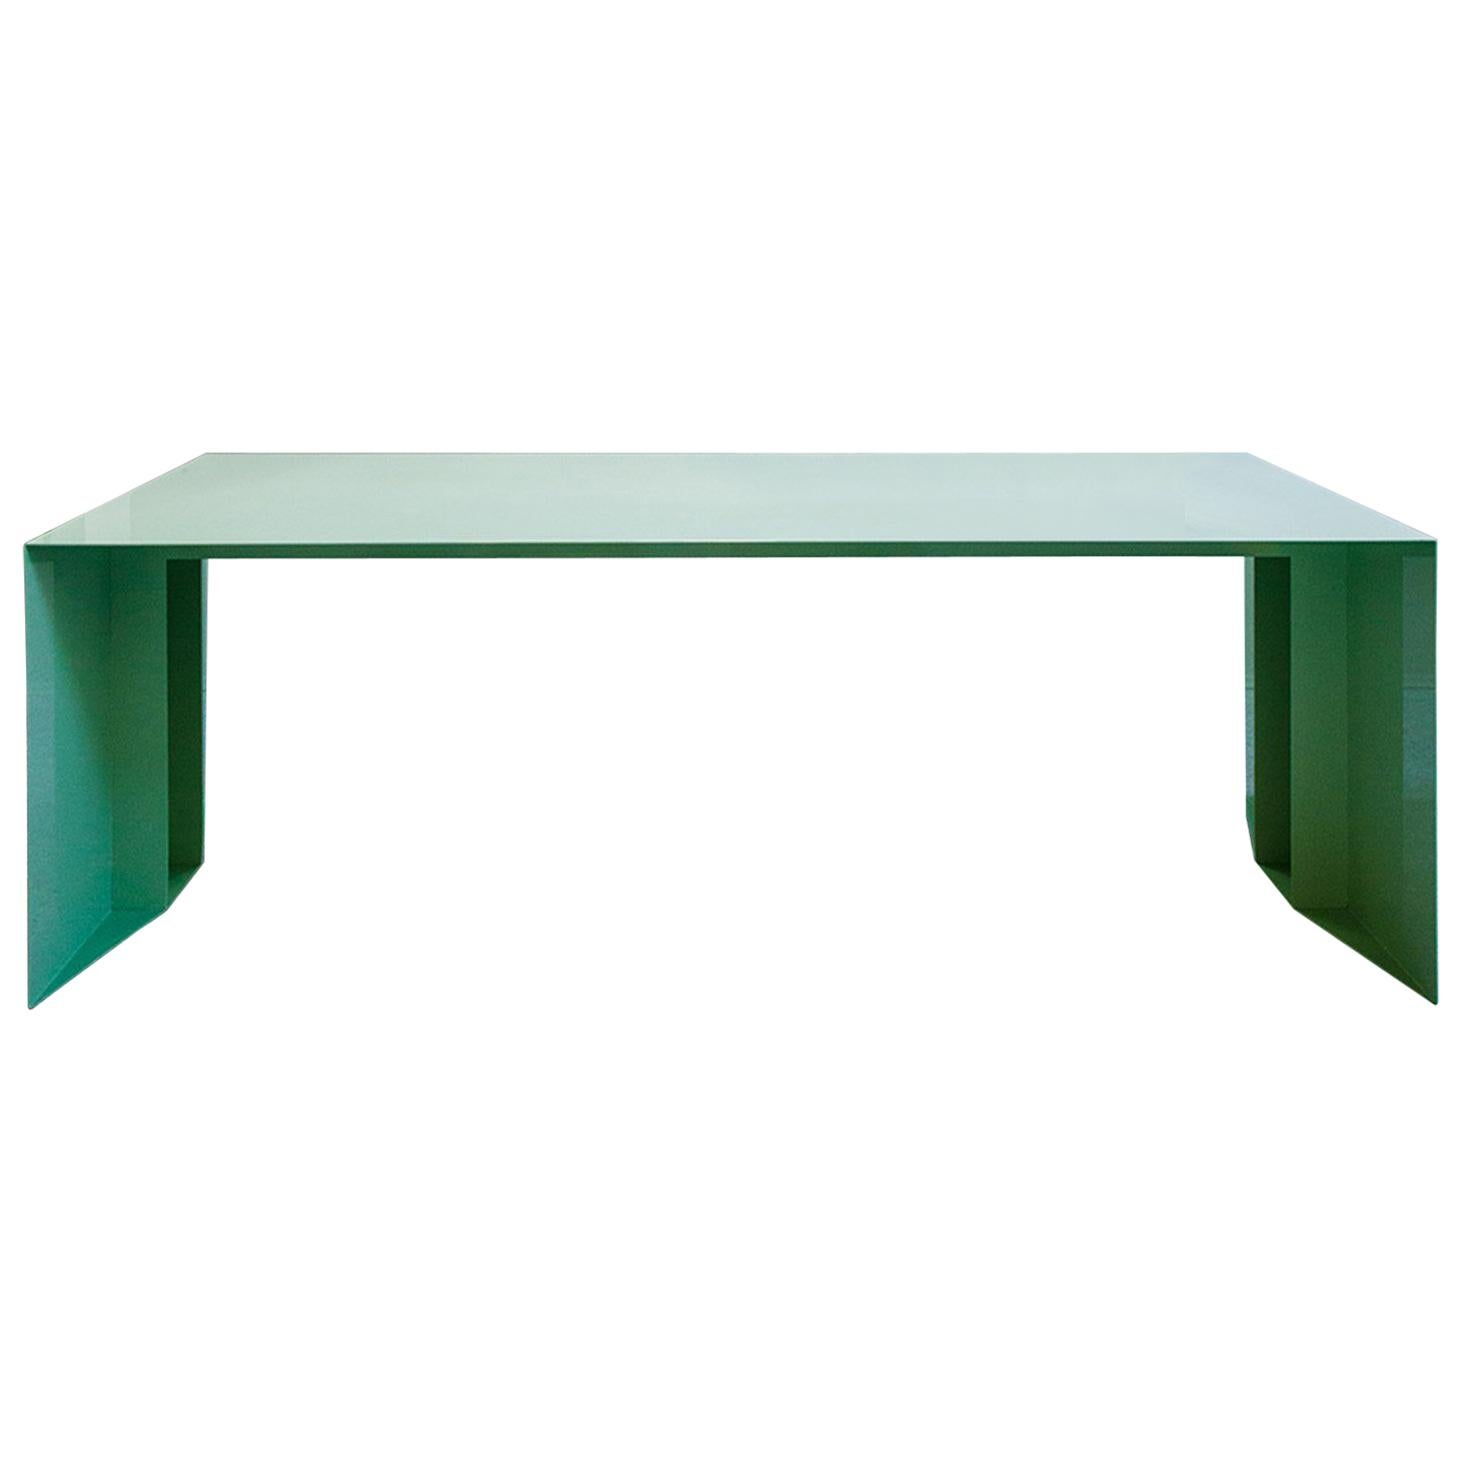 21. Jahrhundert S3 Esstisch/Schreibtisch aus lackiertem Eisen in Grün, Blau, Gelb, Silber und Rosa